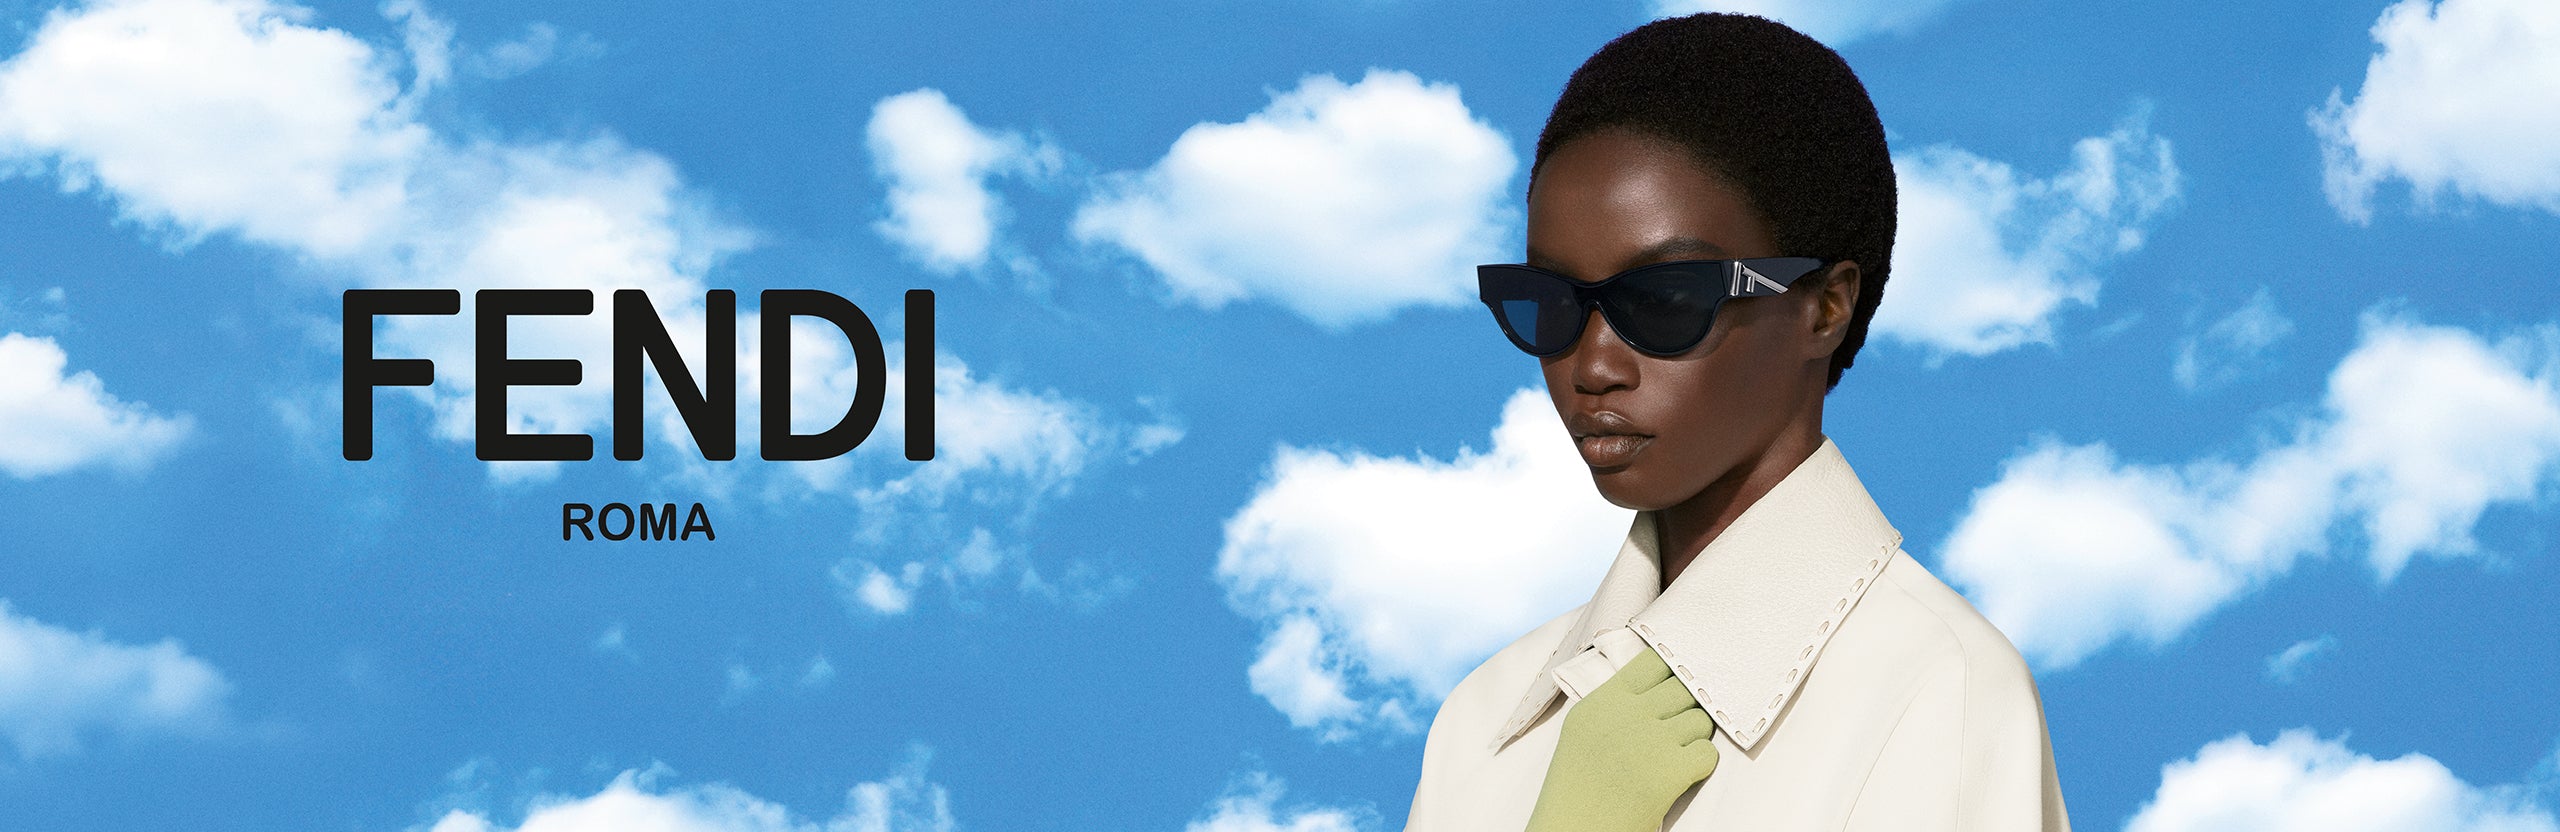 Fendi™ eyewear  Round face sunglasses, Trending sunglasses, Mirrored  sunglasses women